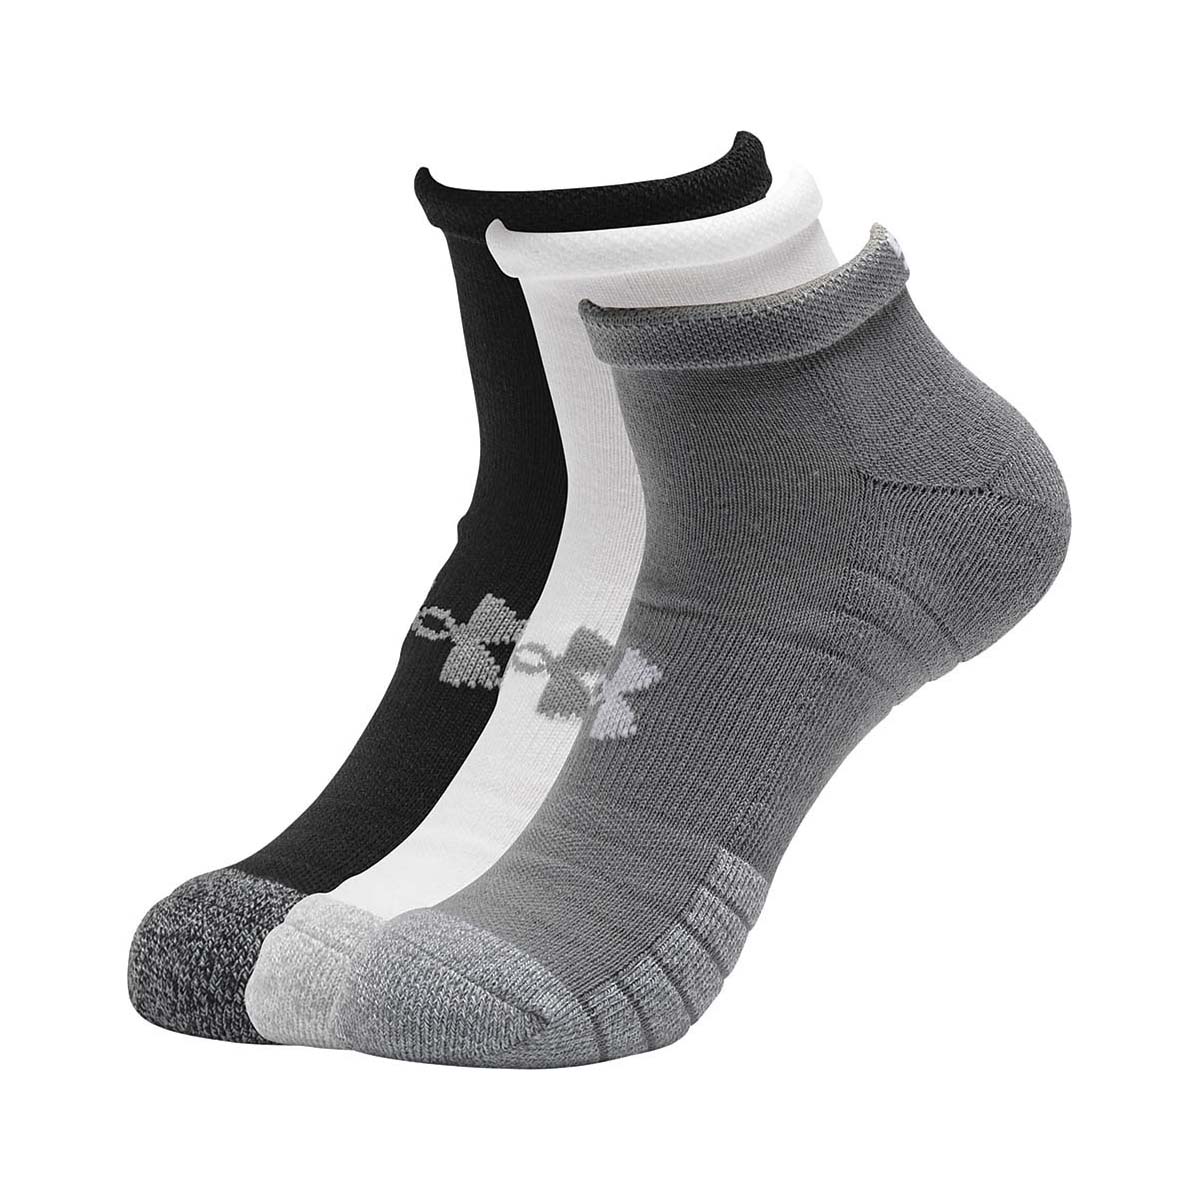 Under Armour Men's HeatGear Lo Cut Socks 3 Pack Steel / White M